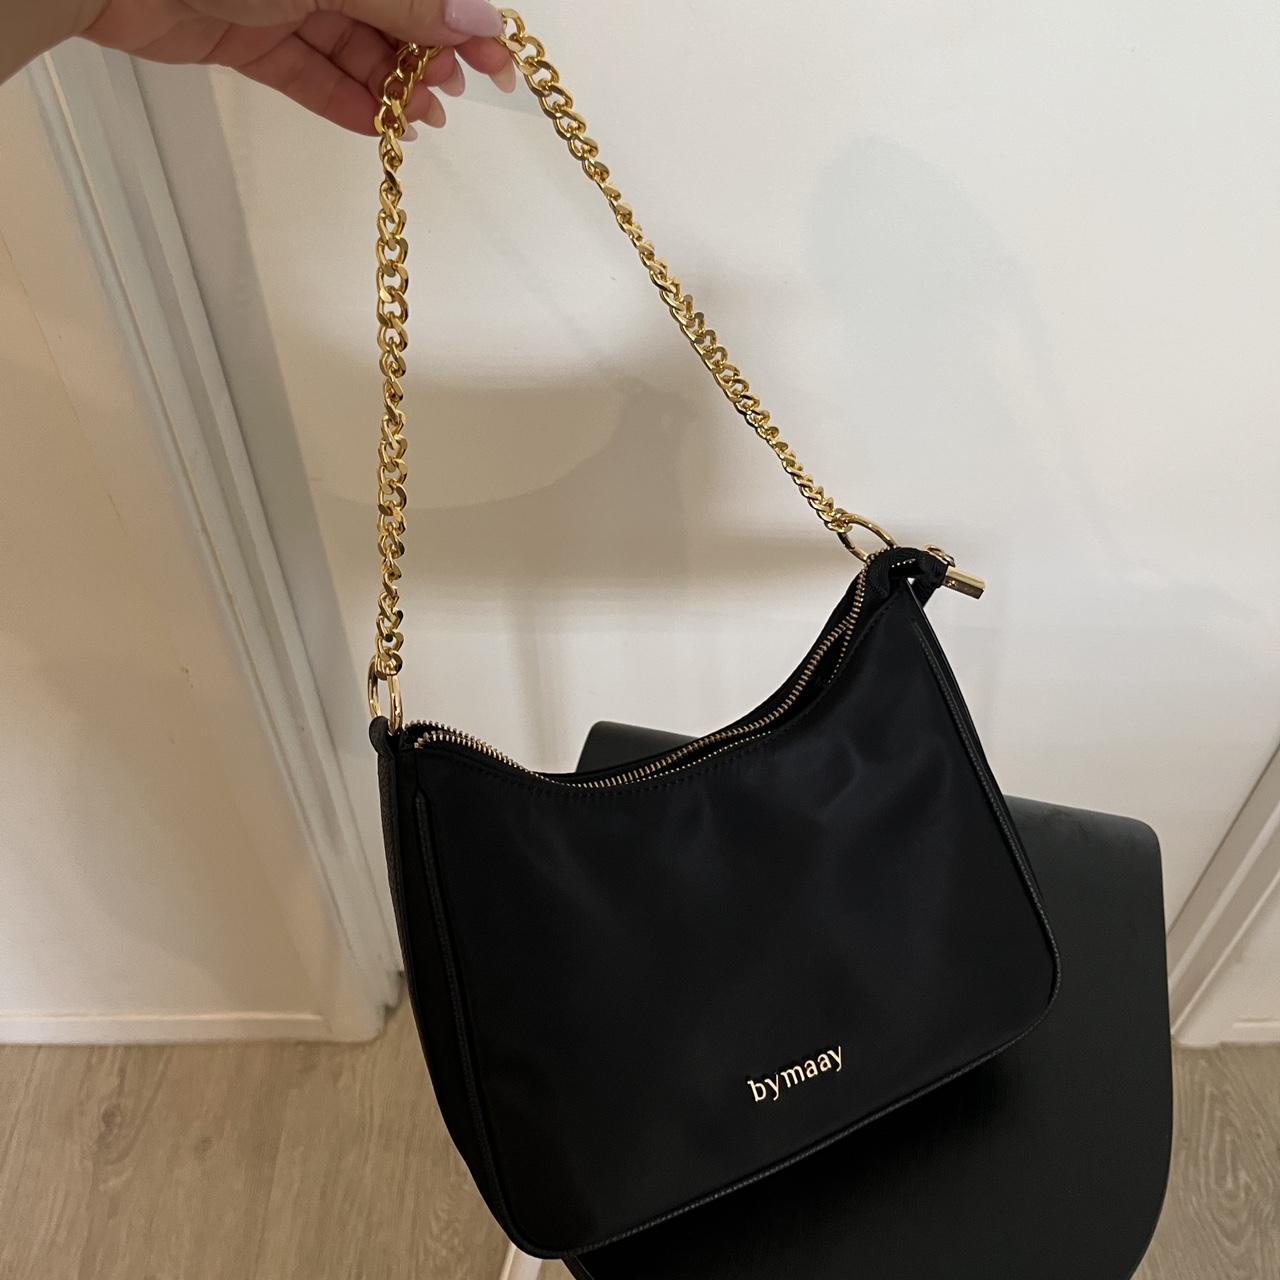 Bymayy handbag | Only comes with shoulder strap - Depop